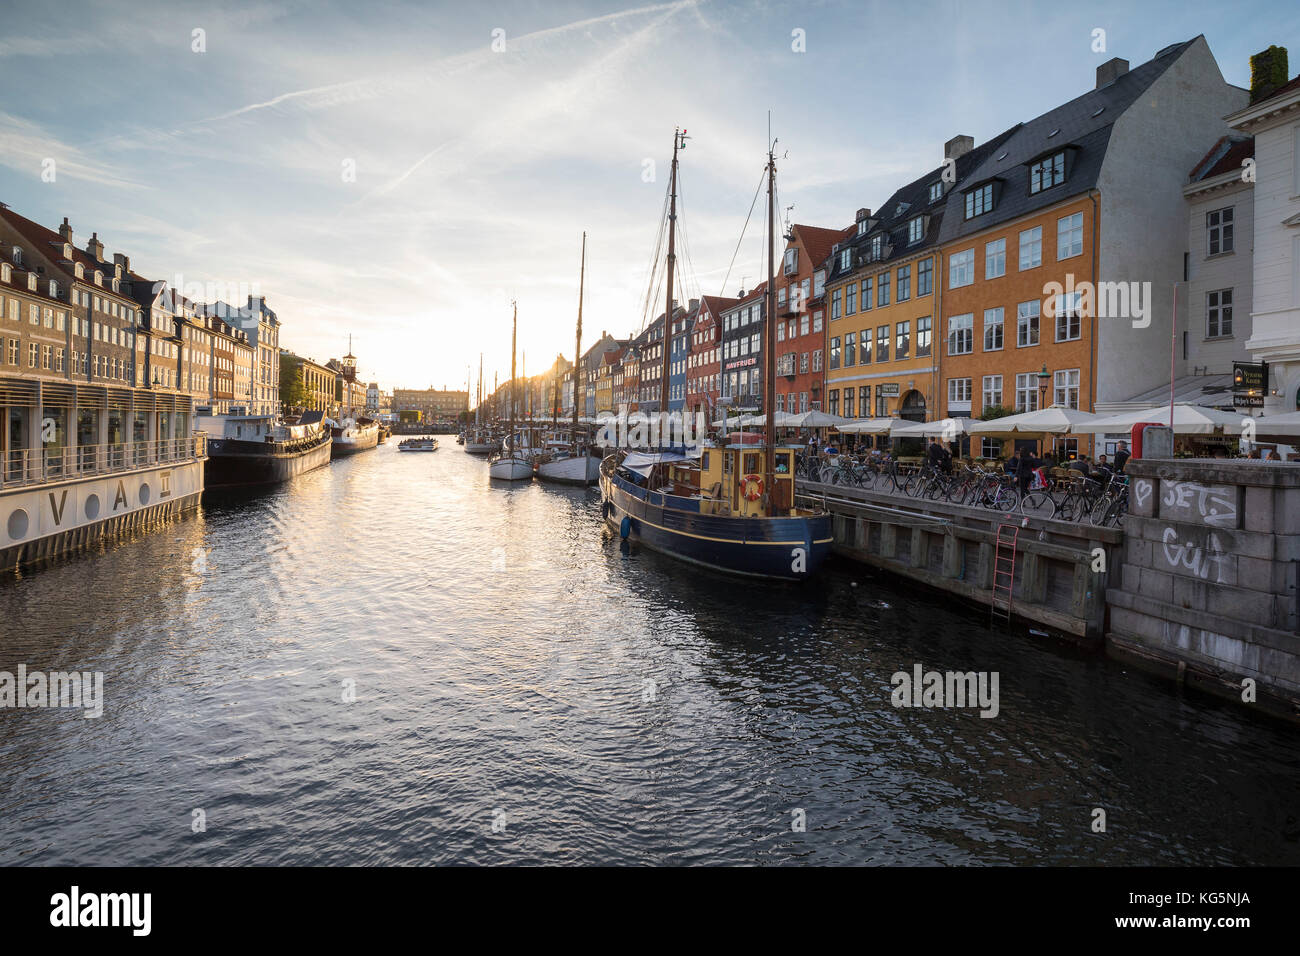 Façades colorées et bateaux typiques le long du canal et du quartier de divertissements de Nyhavn, Copenhague, Danemark, Europe Banque D'Images